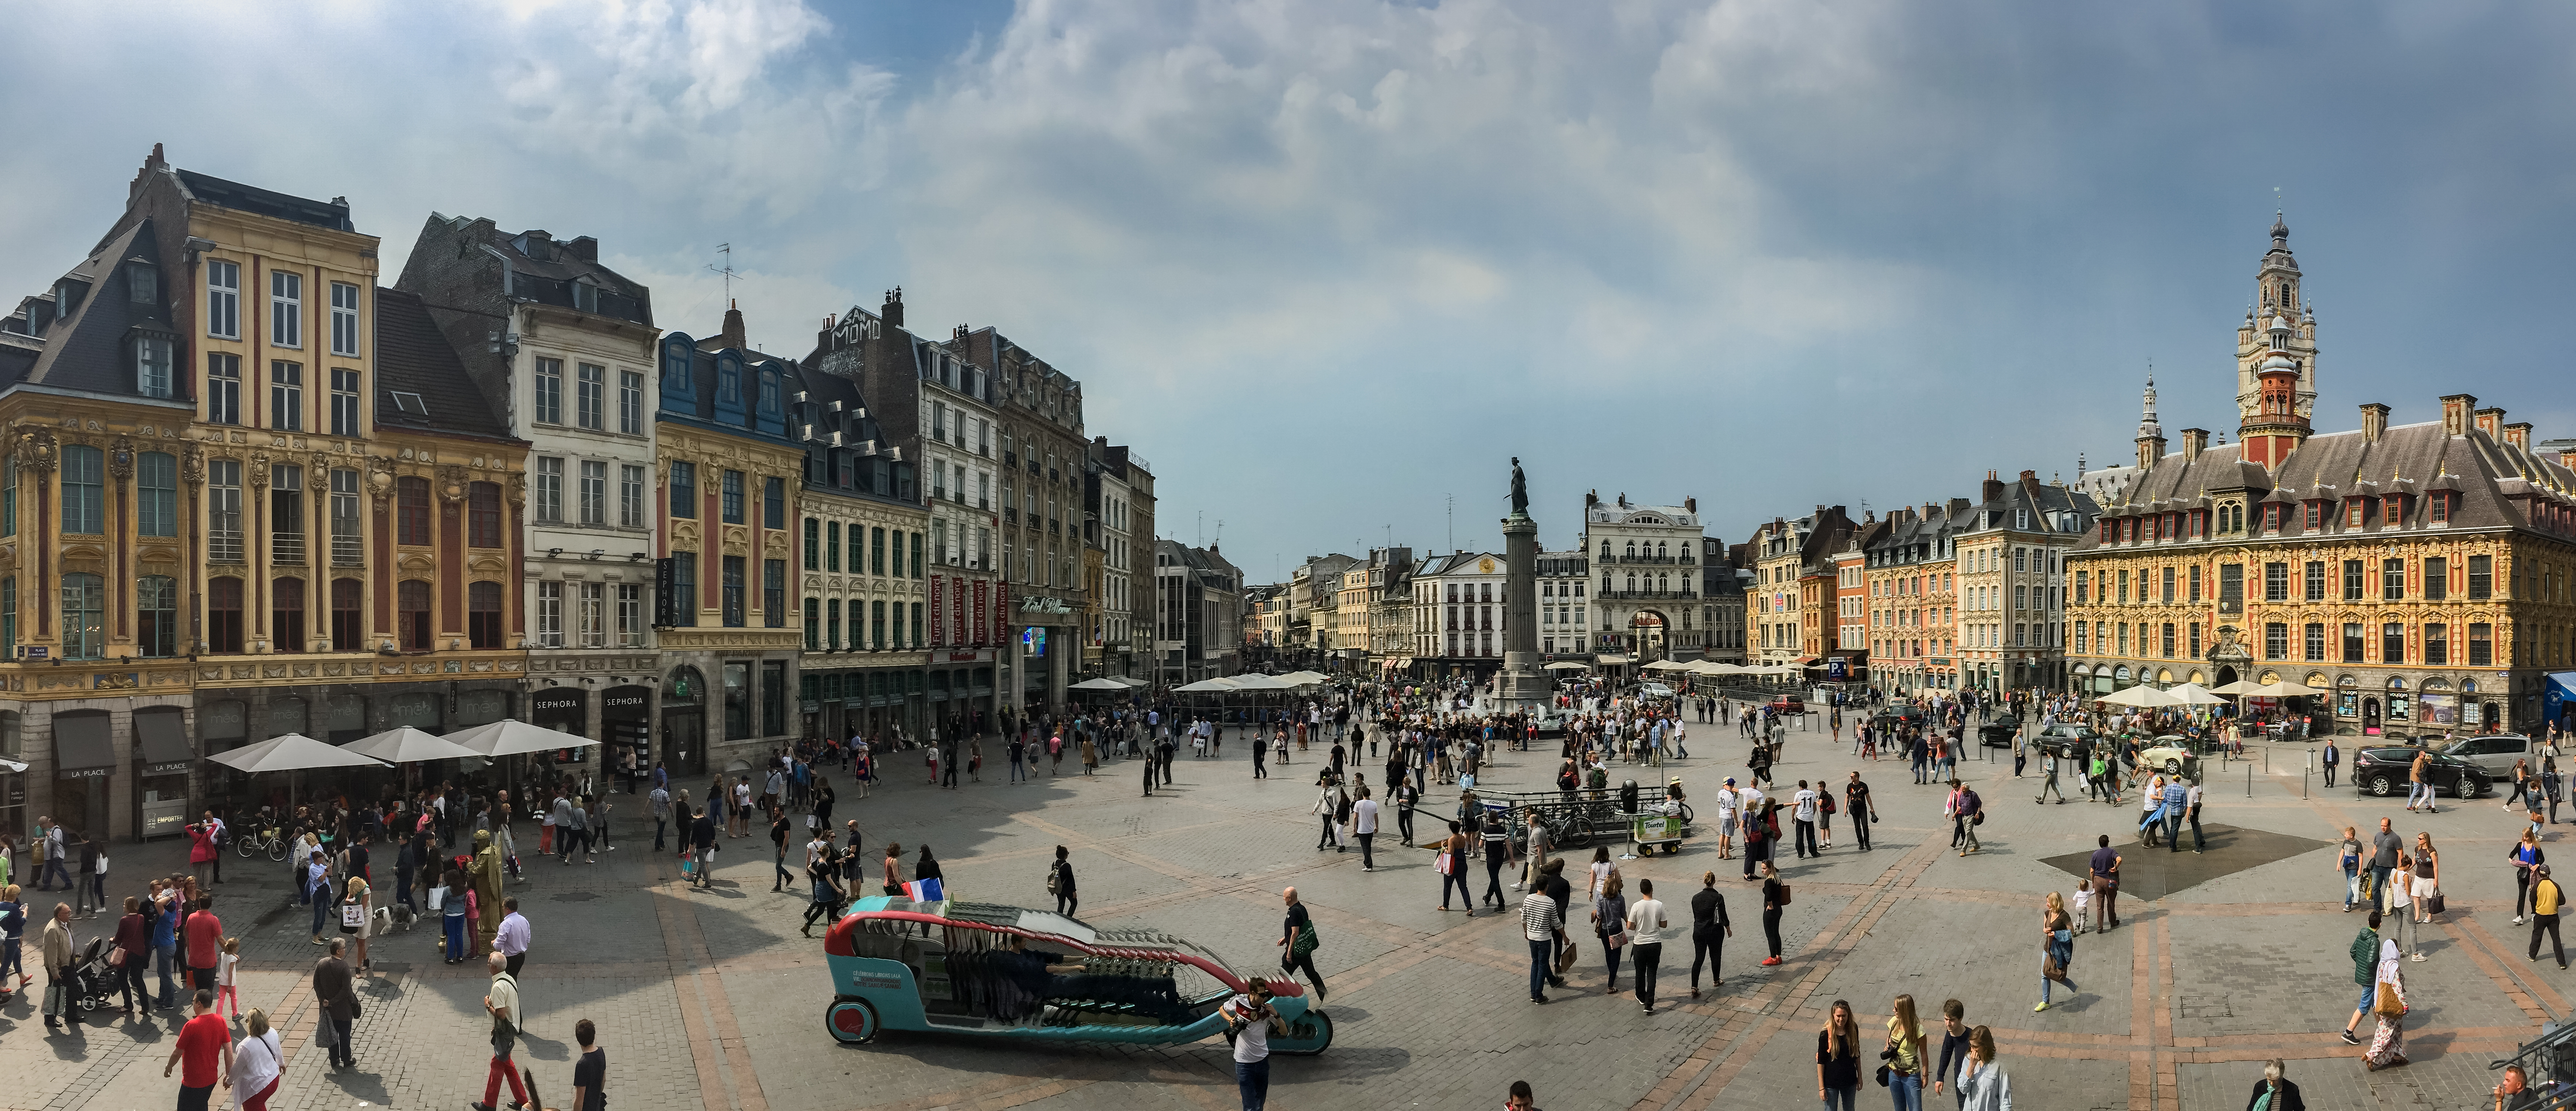 File:Lille Altstadt.jpg - Wikimedia